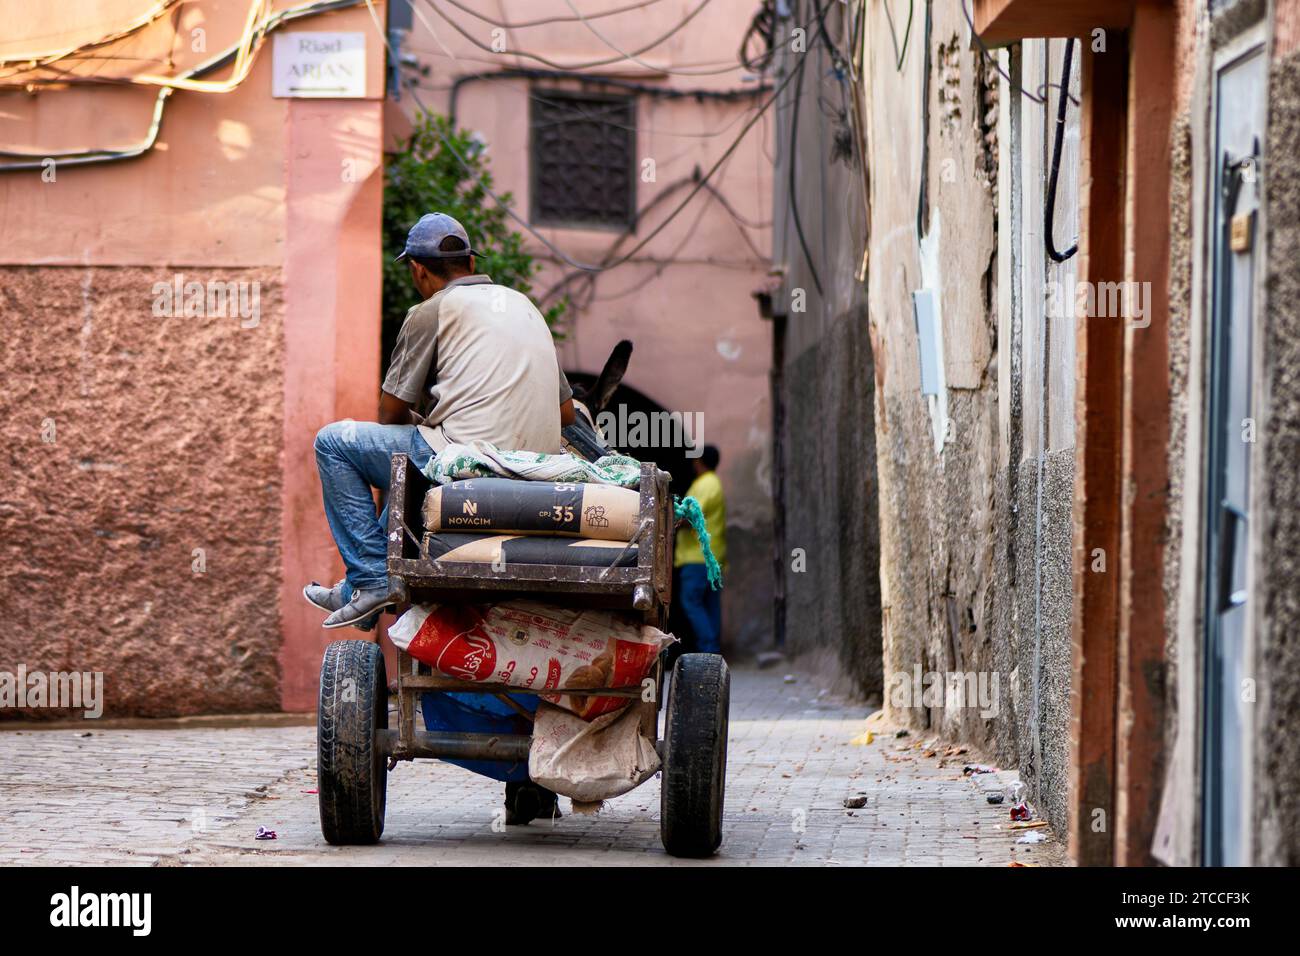 Marrakech, Marocco: L'uomo marocchino trasporta sacchi di cemento su un carrello a due ruote trainato da un asino all'interno di una strada della Medina di Marrakech. Foto Stock